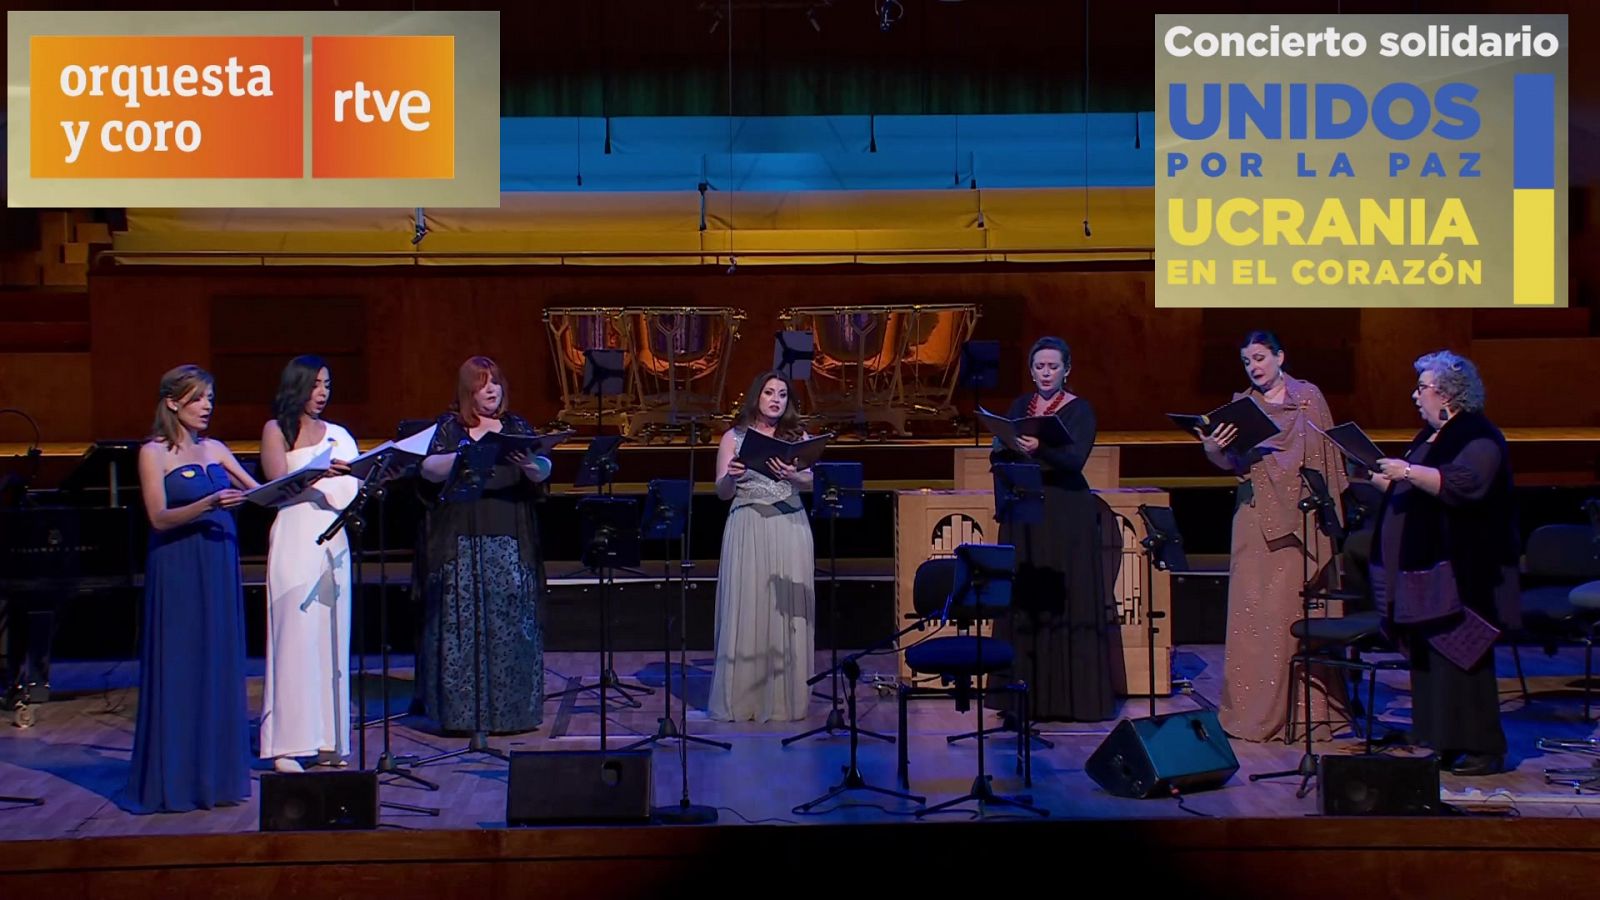 Los conciertos de La2 - Concierto de la OSCRTVE Unidos por la paz: Ucrania en el corazón